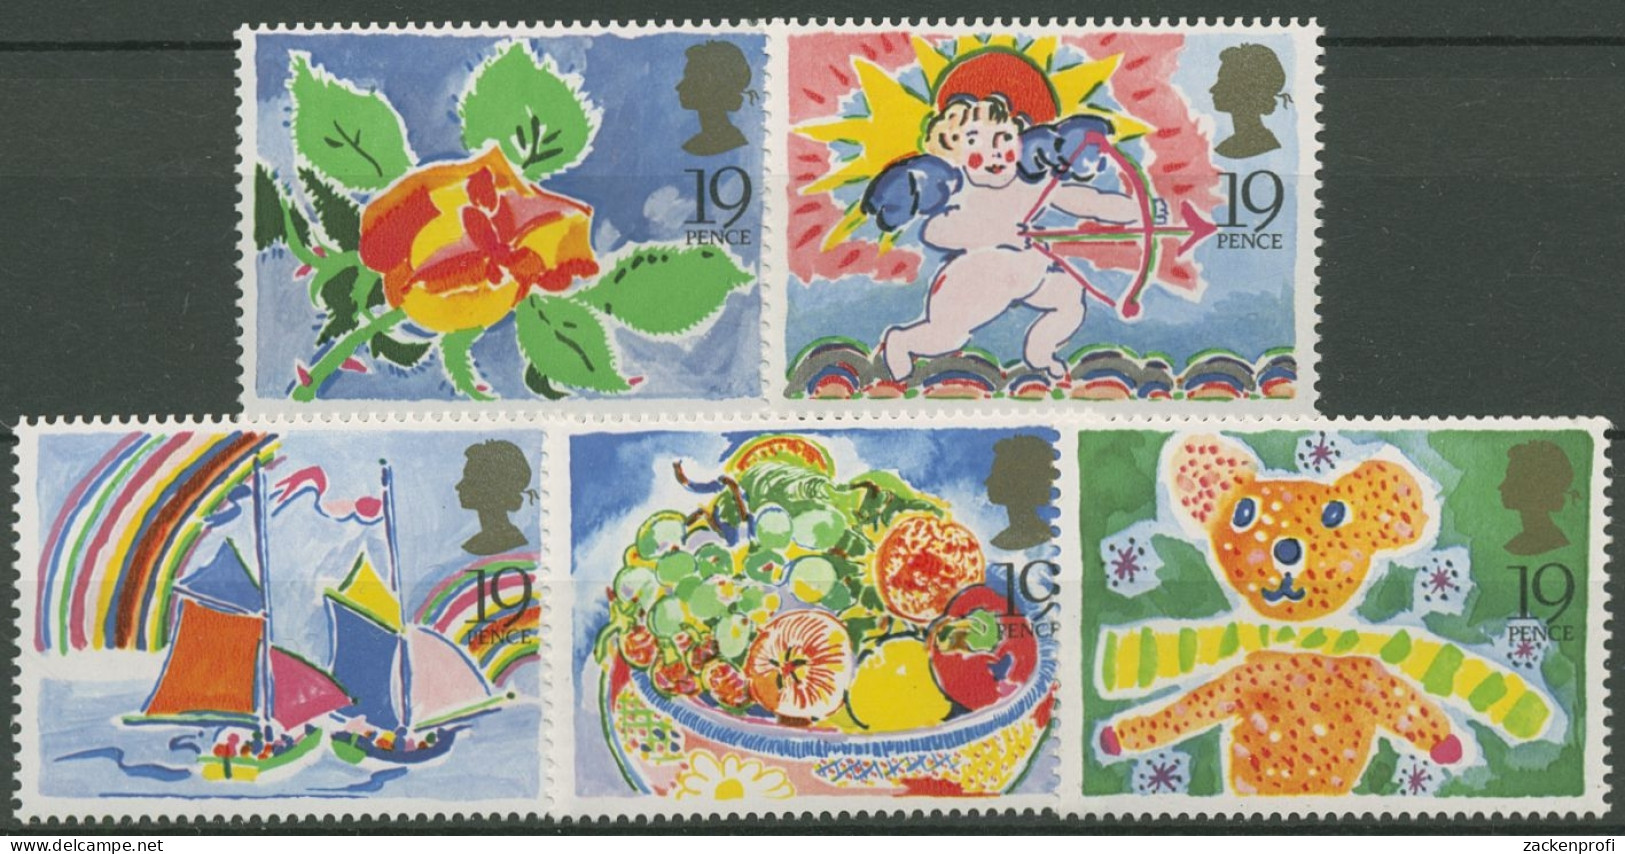 Großbritannien 1989 Gruß- Und Glückwunschmarken: Rose, Cupido 1189/93 Postfrisch - Unused Stamps